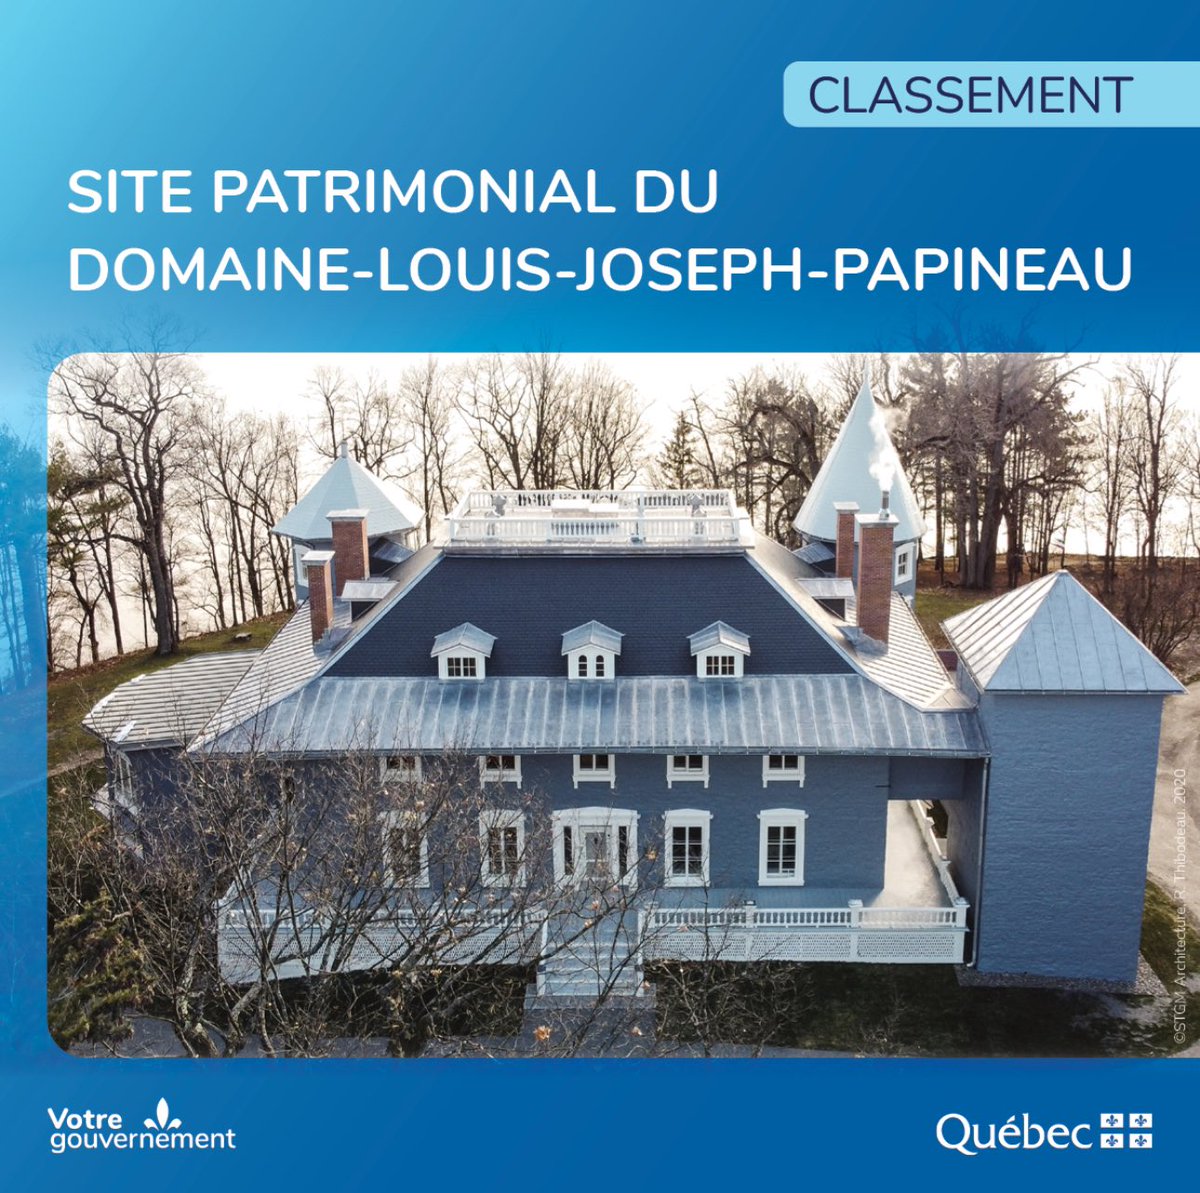 Lors du 350e anniversaire de la Seigneurie de la Petite-Nation, le ministre de la Culture et responsable de la région de l’Outaouais @lacombemathieu a annoncé le classement du site patrimonial du Domaine-Louis-Joseph-Papineau. C’est une grande fierté pour la région!